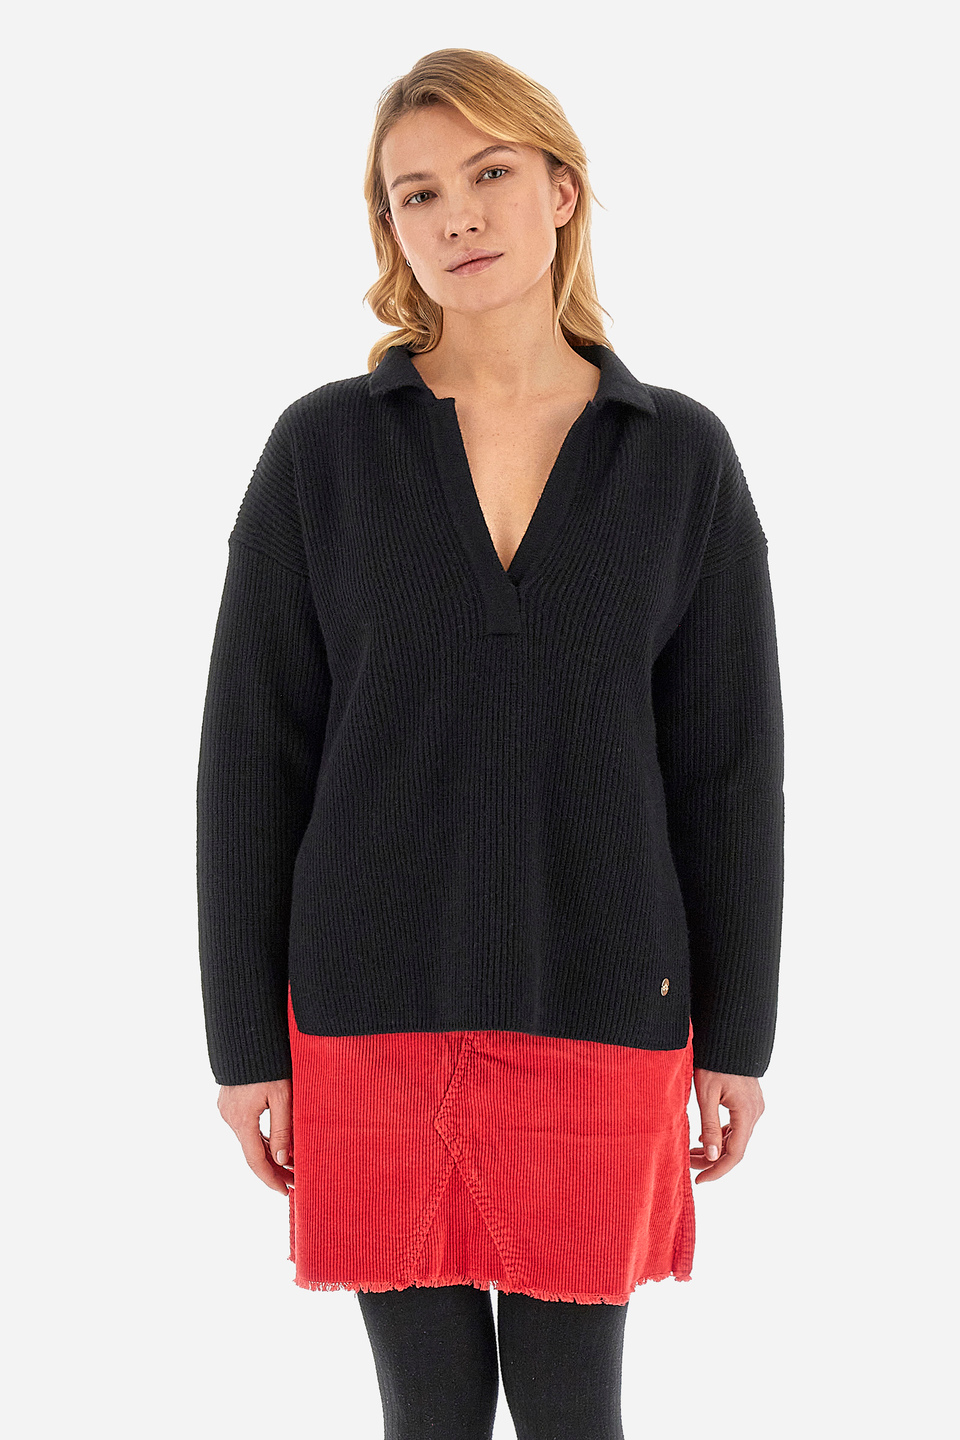 Sweater polo de corte recto - Wilma | La Martina - Official Online Shop